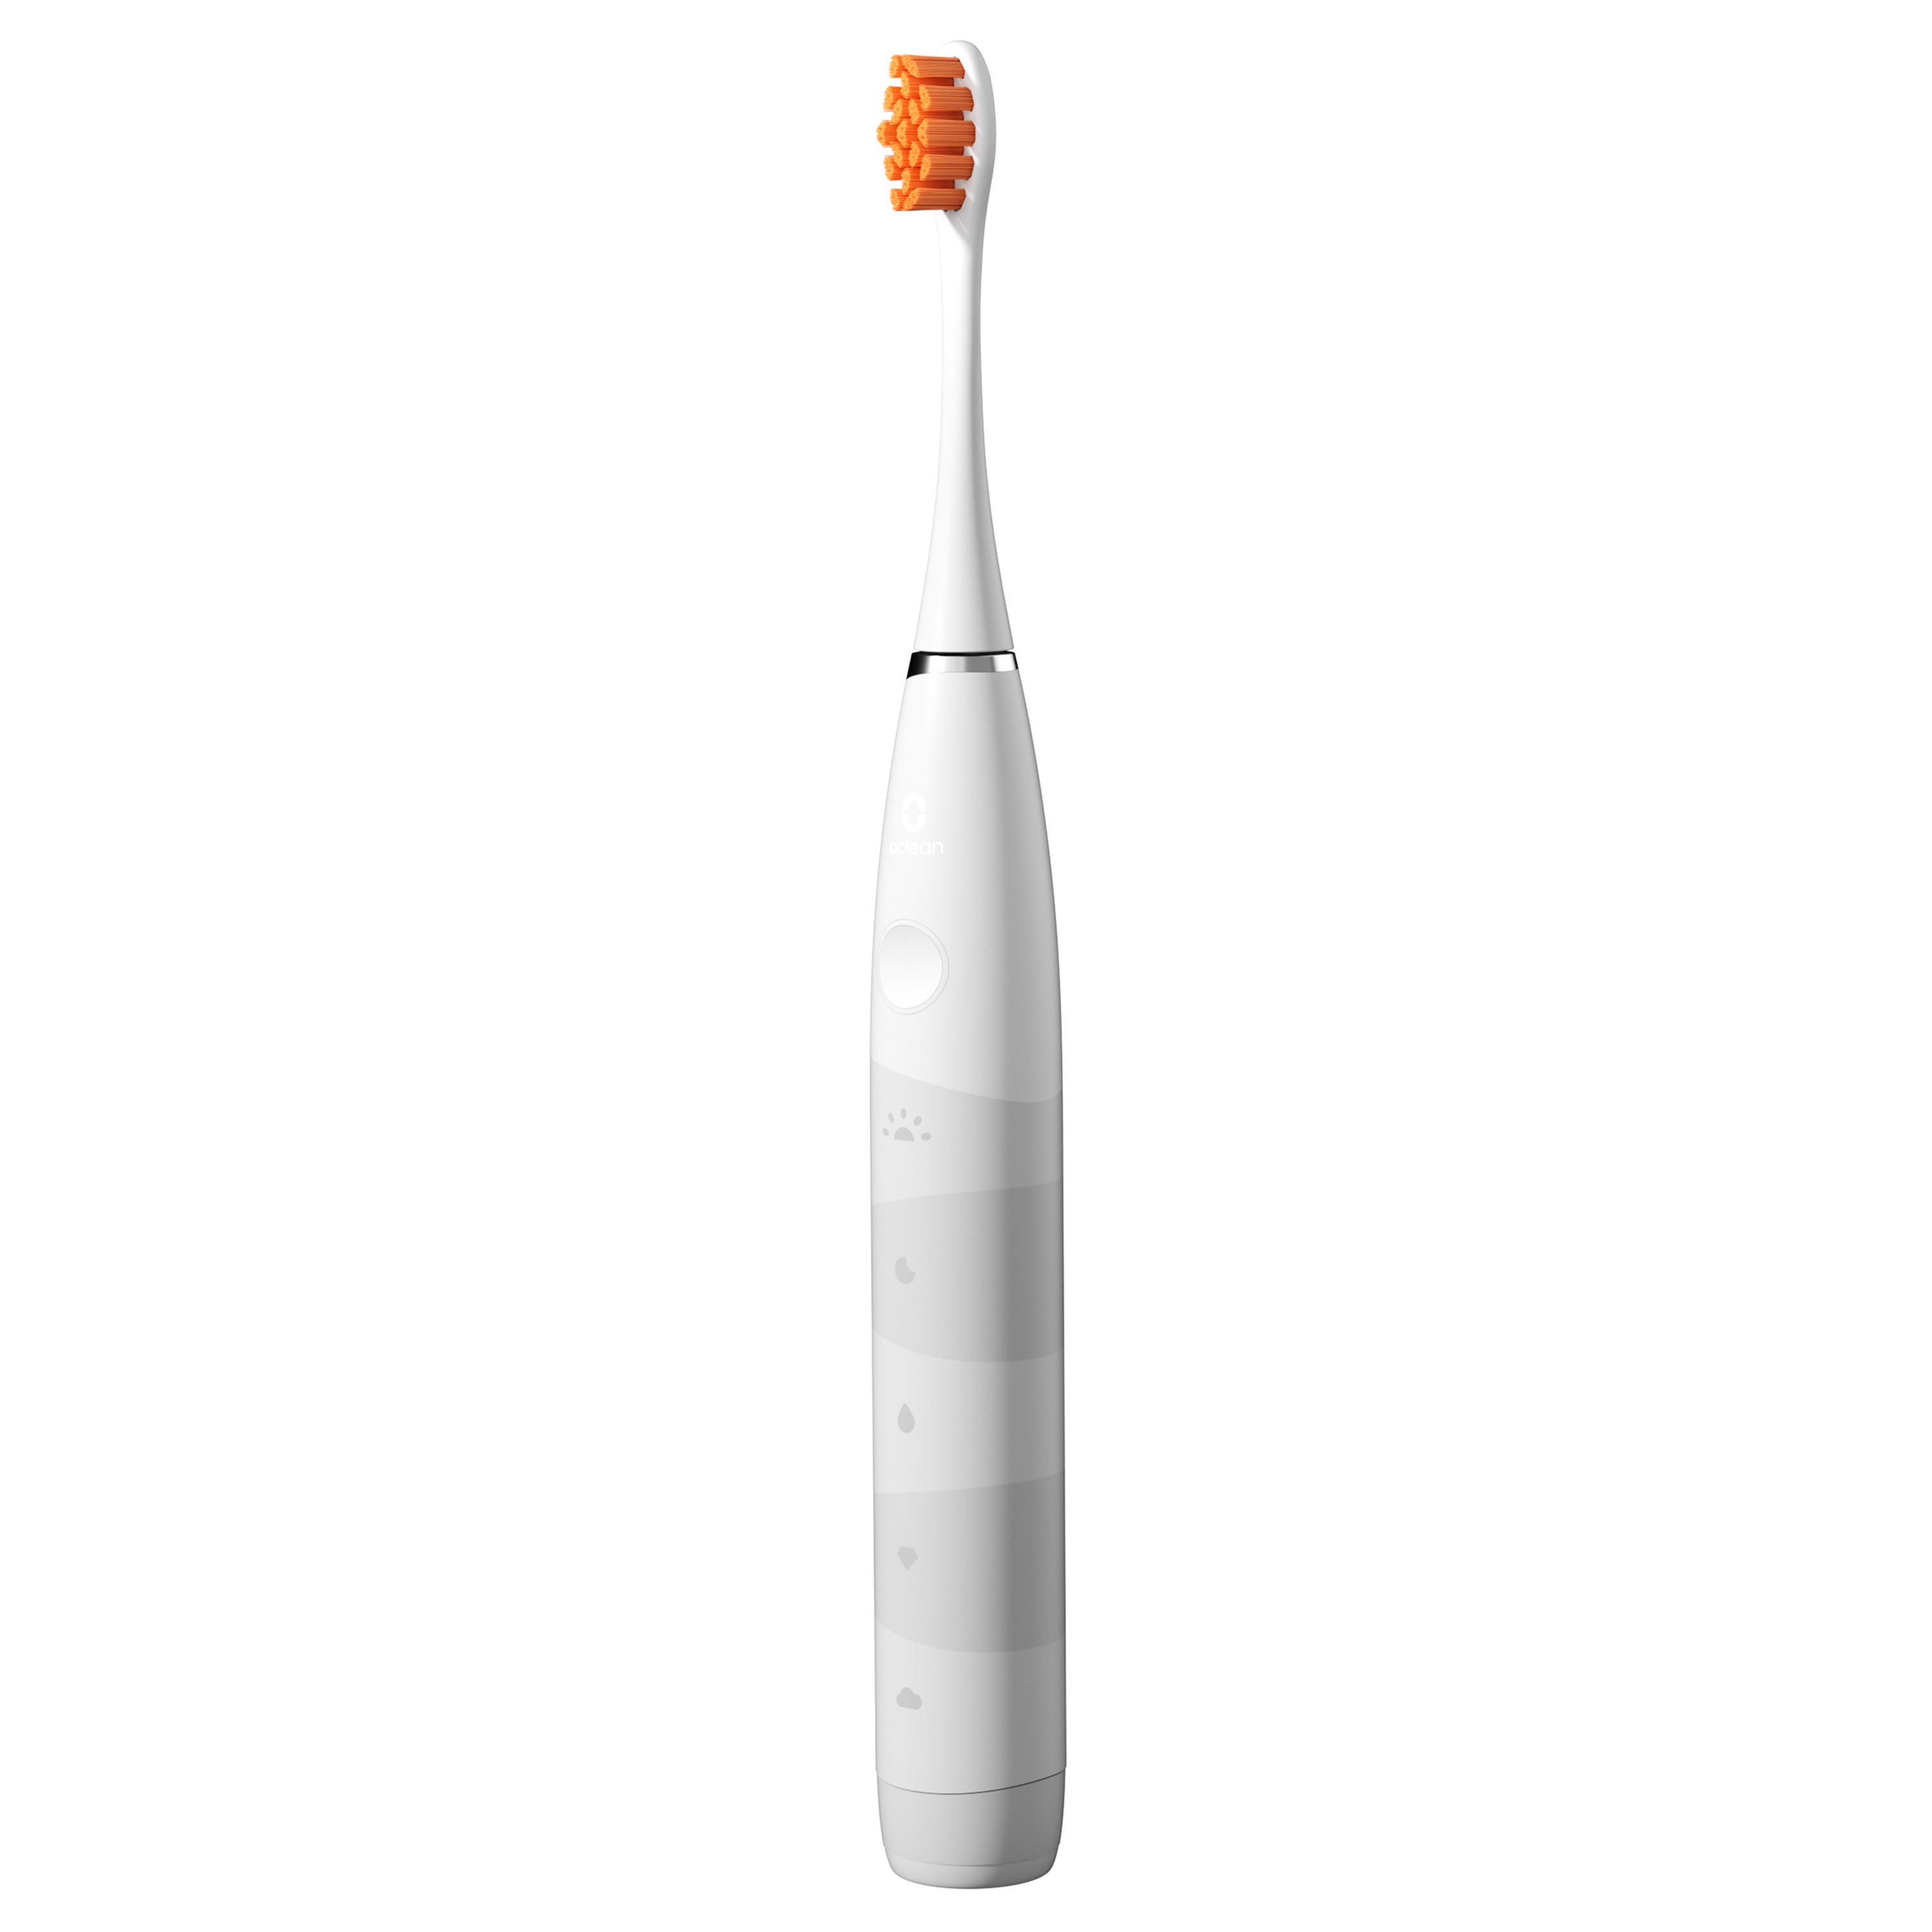 Oclean Flow - Elektrische Tandenborstel - 5 Verschillende Poetsstanden - Timer - Lange levensduur van batterij - Wit - C01000307